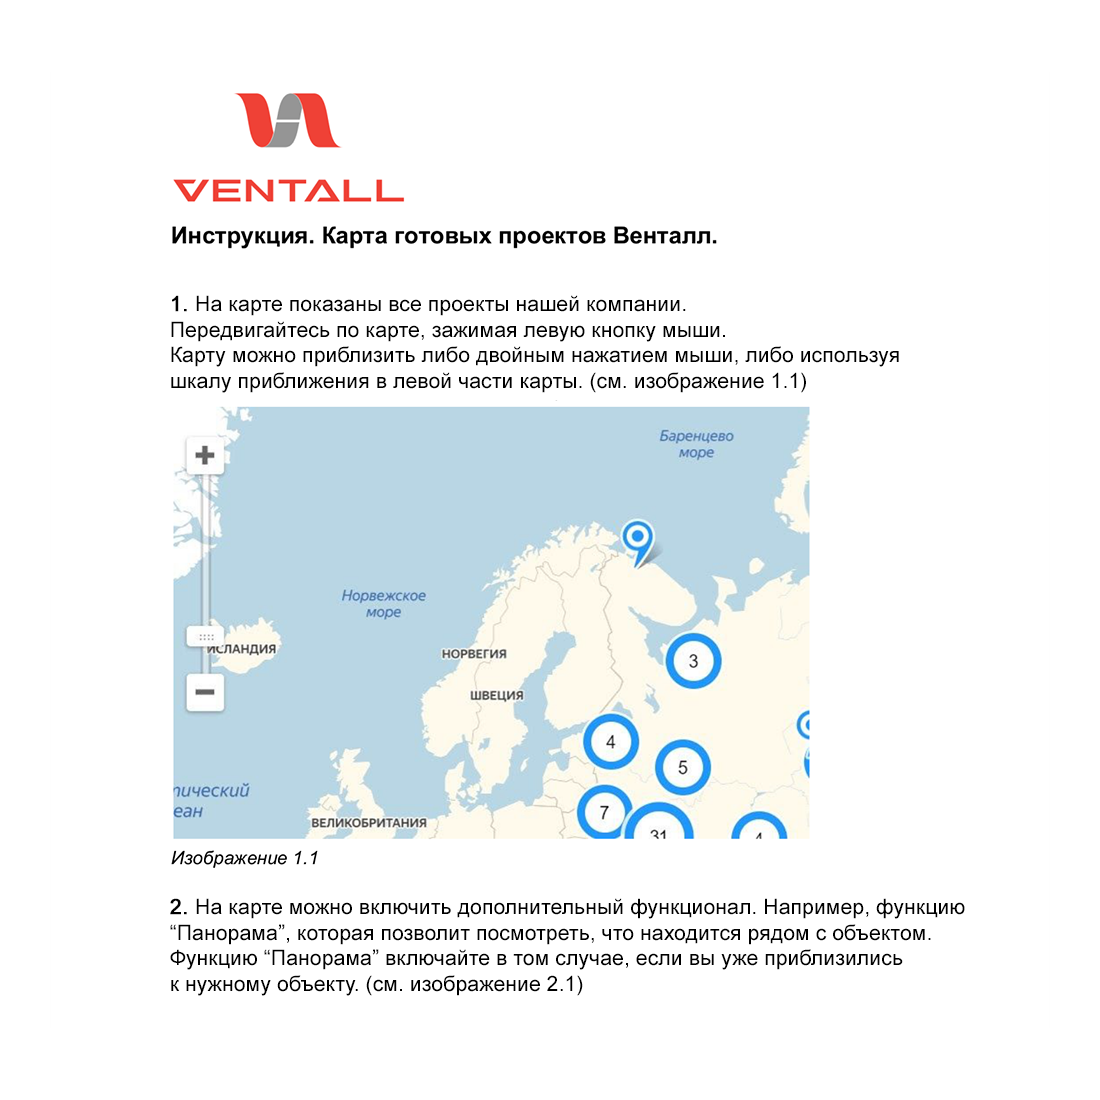 Как разместить портфолио на сайте, карта реализованных проектов Венталл